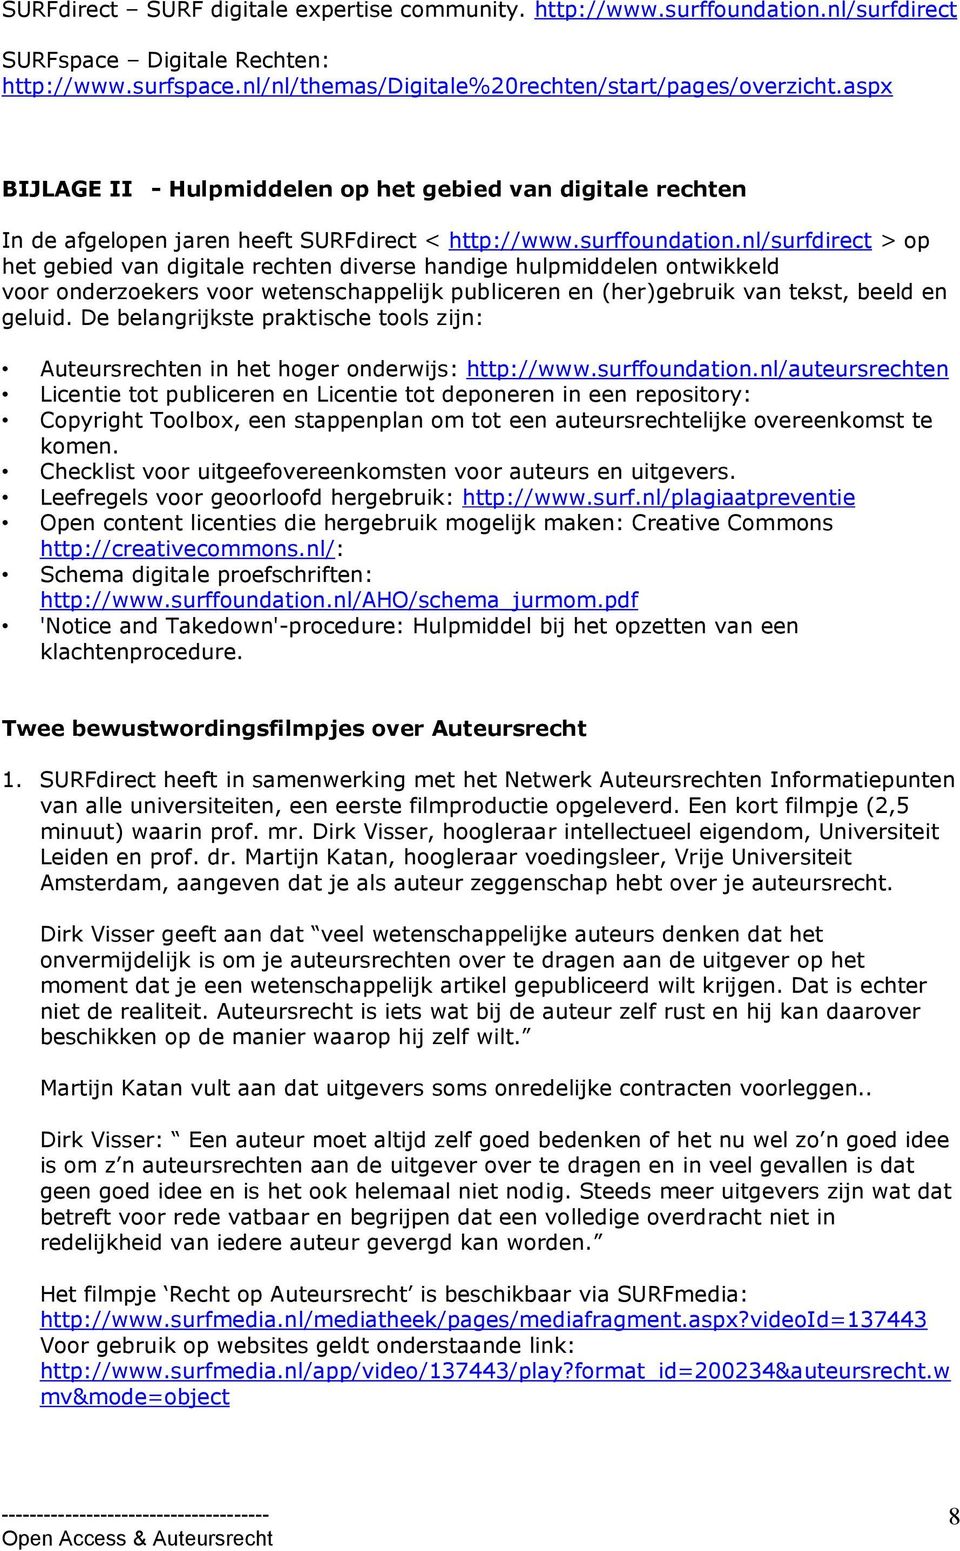 nl/surfdirect > op het gebied van digitale rechten diverse handige hulpmiddelen ontwikkeld voor onderzoekers voor wetenschappelijk publiceren en (her)gebruik van tekst, beeld en geluid.